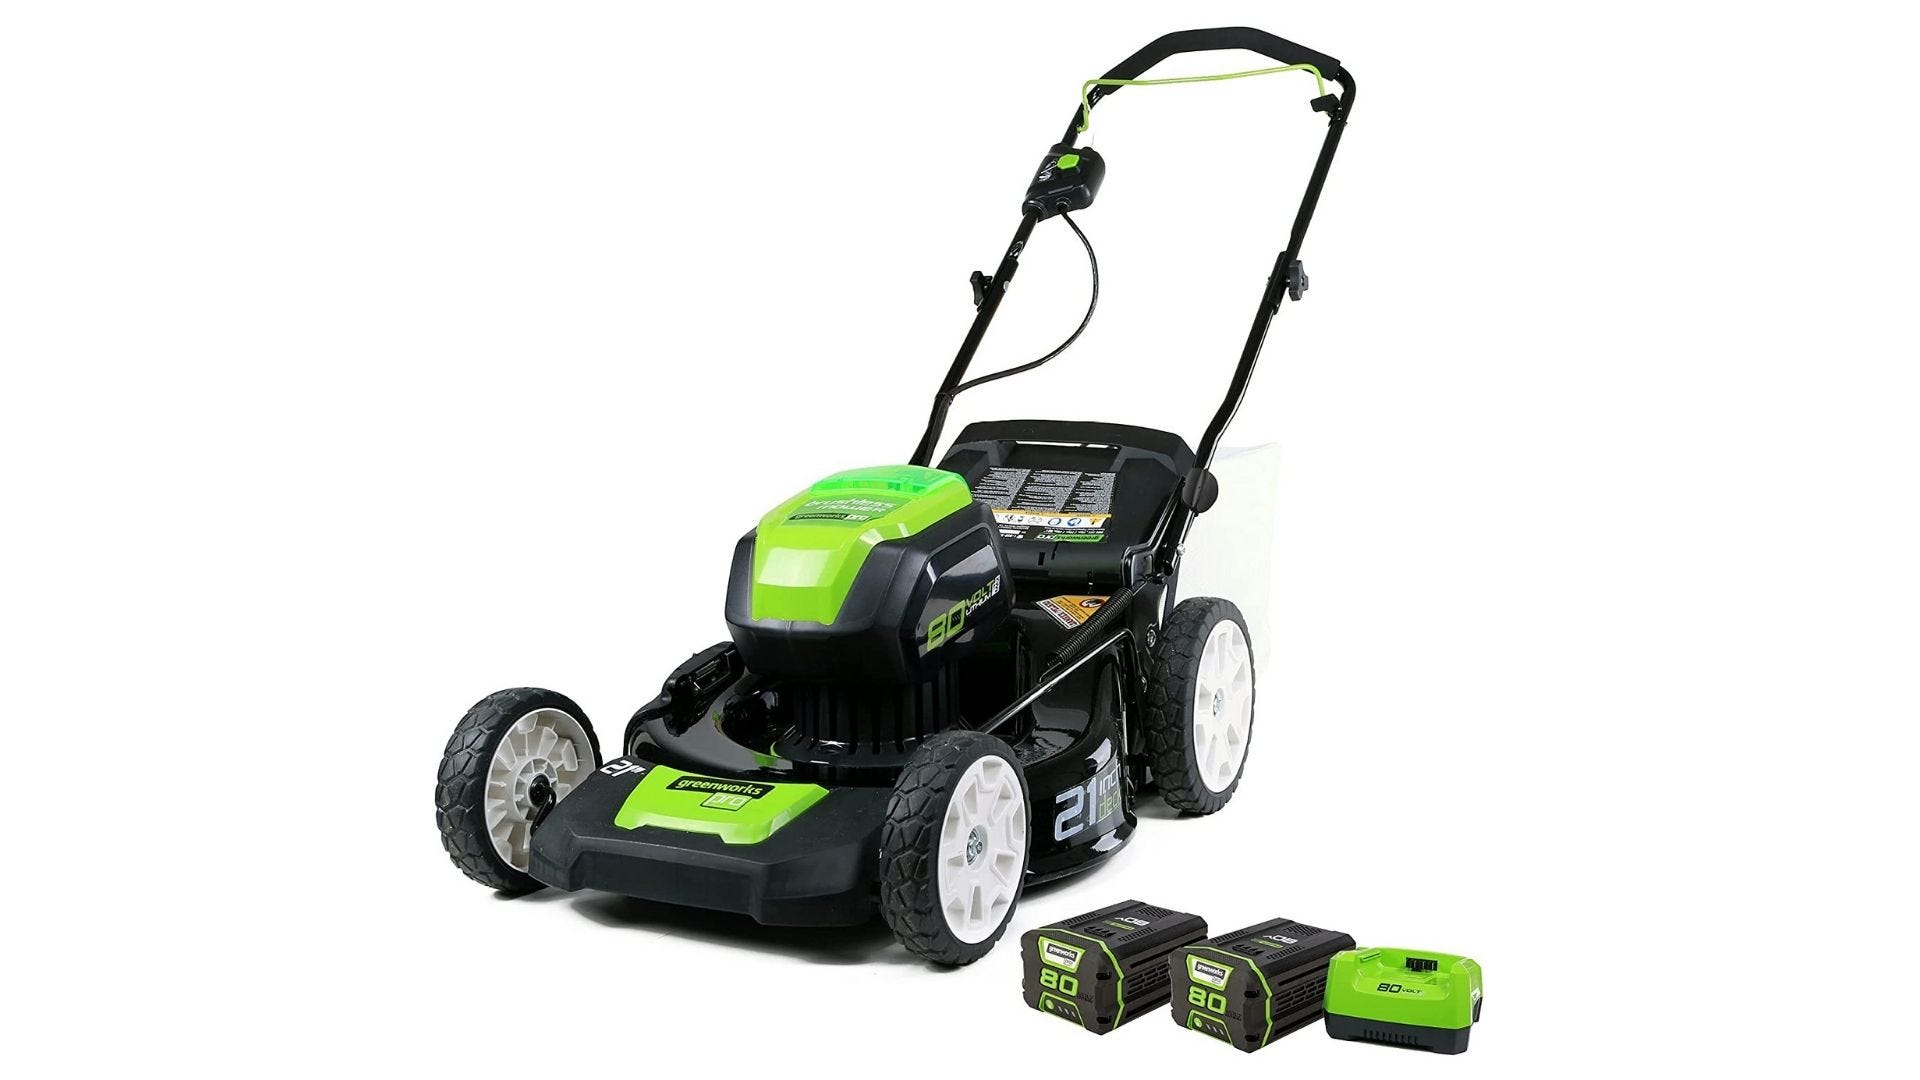 Greenworks Pro 80V 21-inch không chổi than (3-Trong-1) Đẩy Máy cắt cỏ